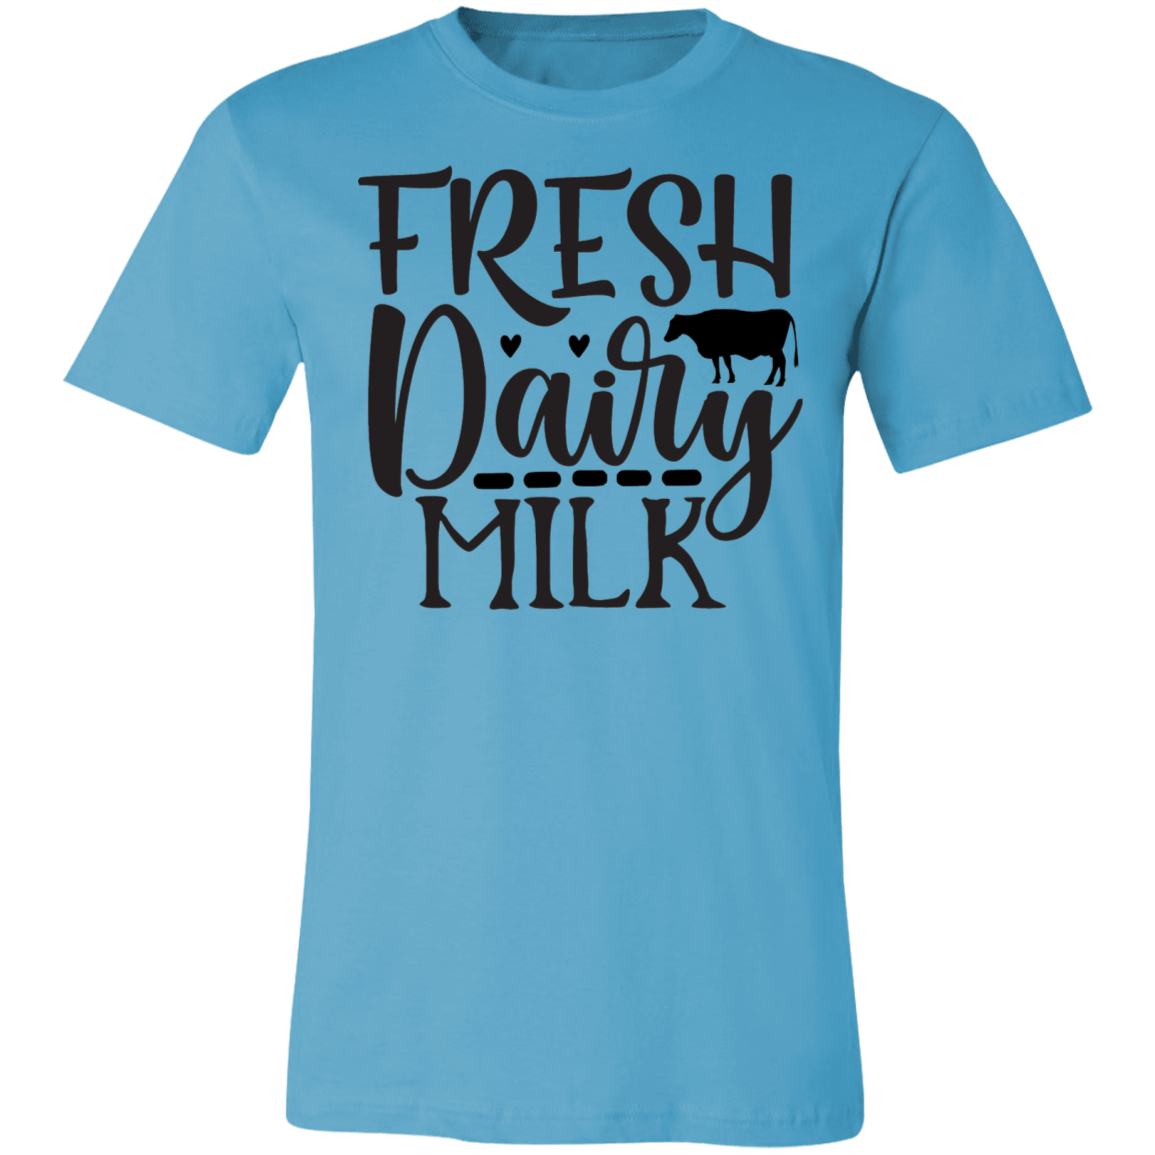 Fresh Dairy Milk Tee